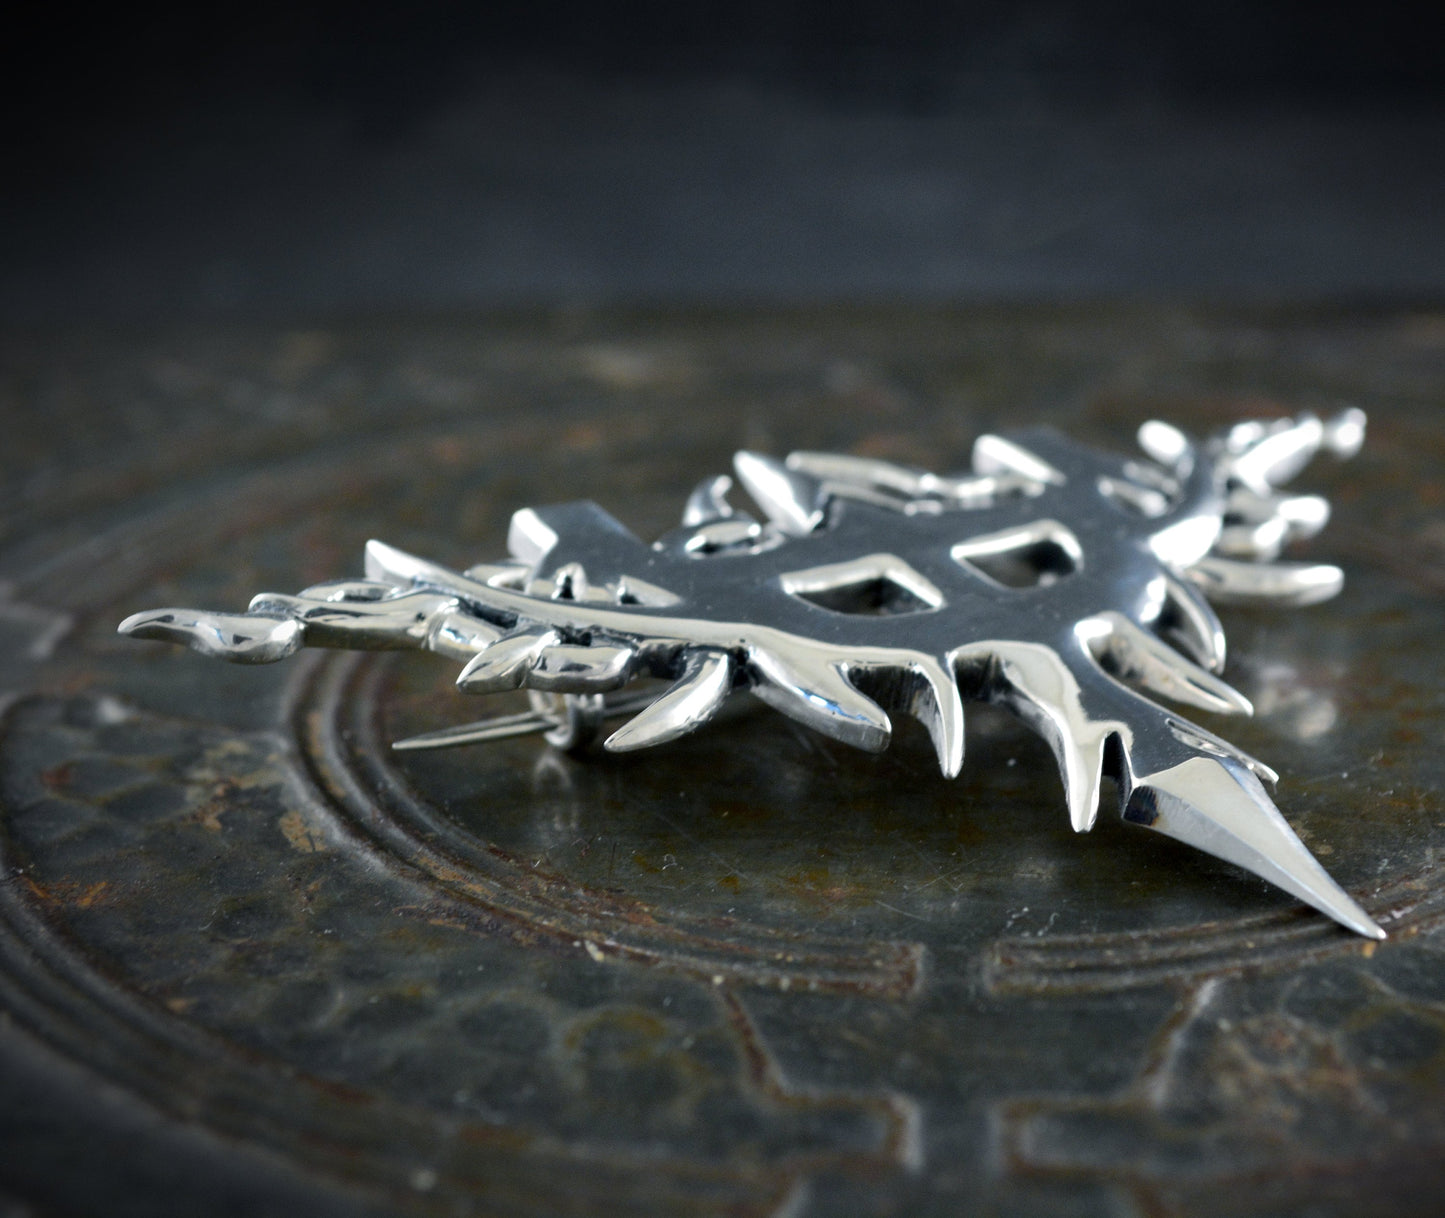 Silberne Brosche, inspiriert vom Emblem des Judas Priest